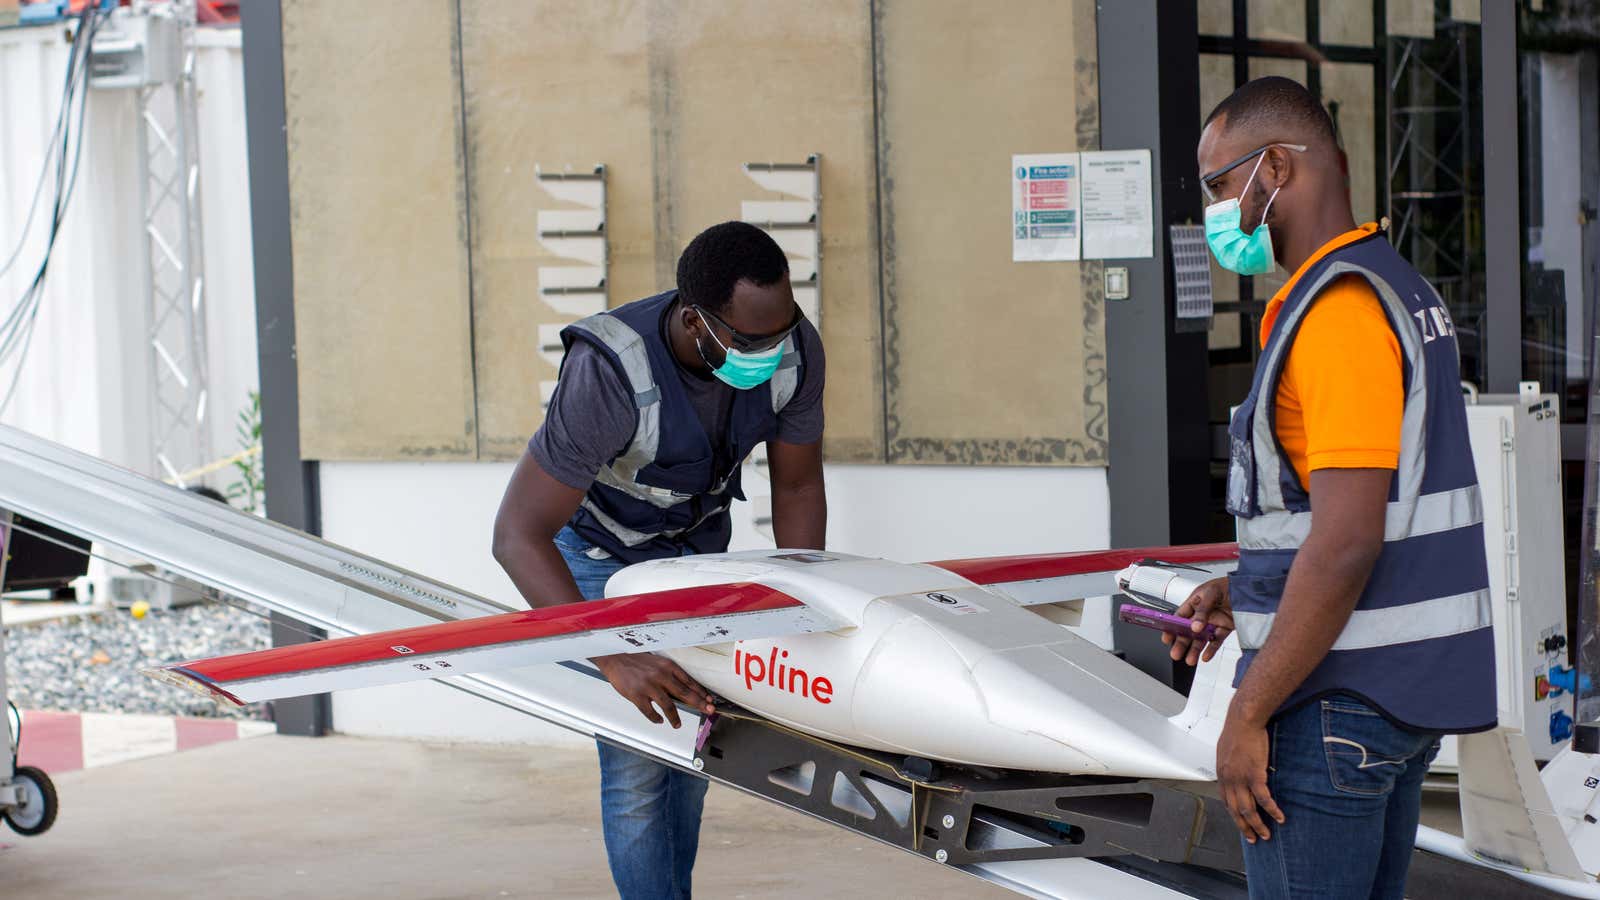 Zipline is preparing to take-off in Nigeria